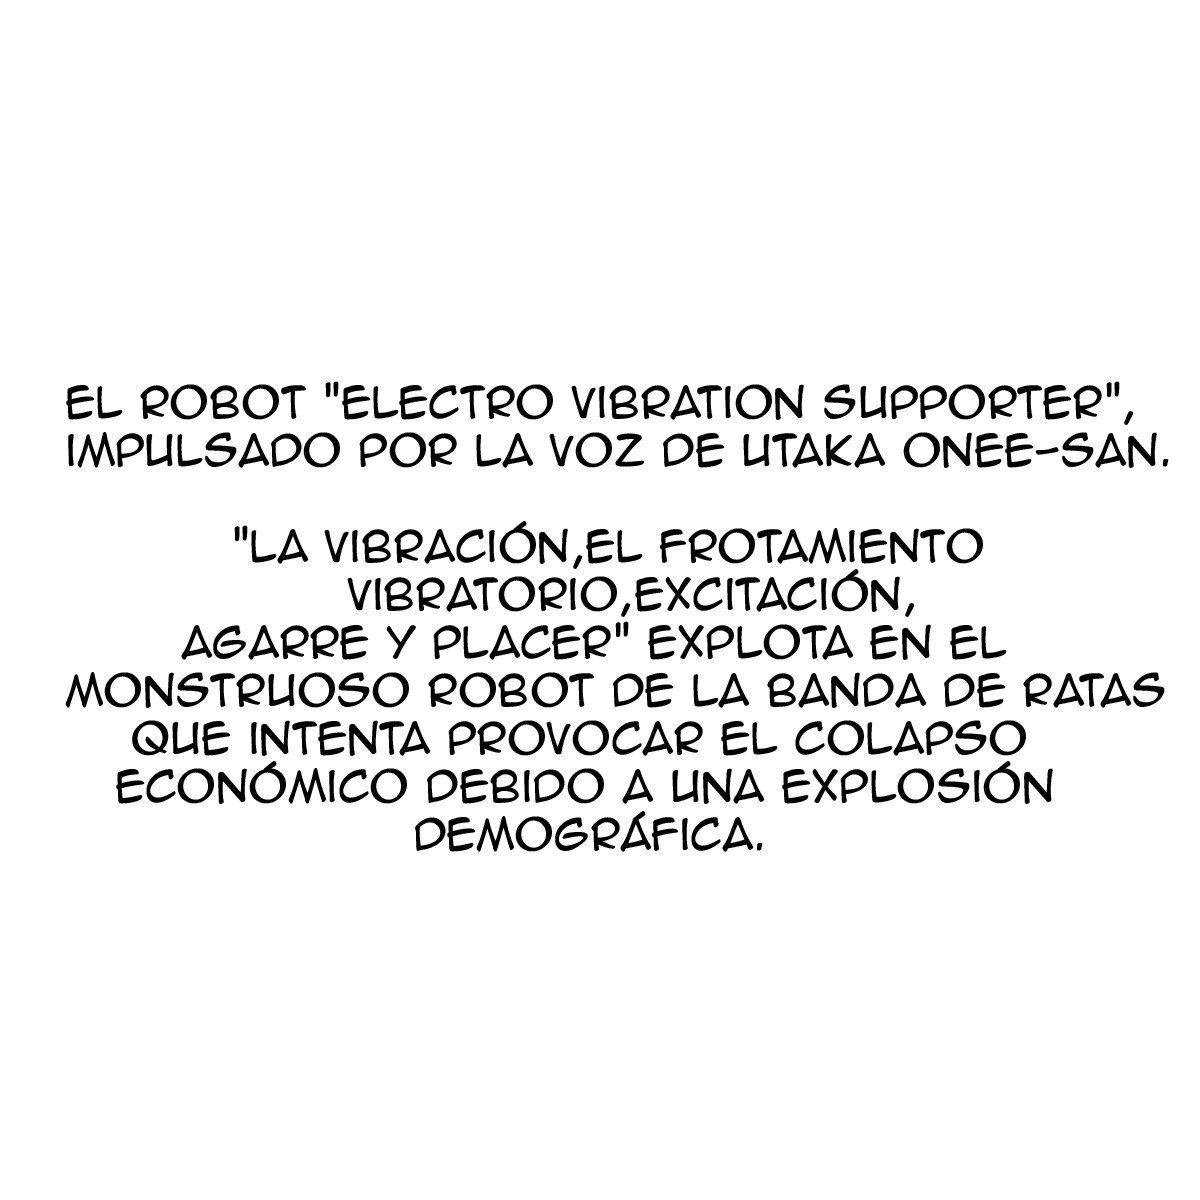 Lucha! Apoyo A El Electro Vibration Supporter - 0